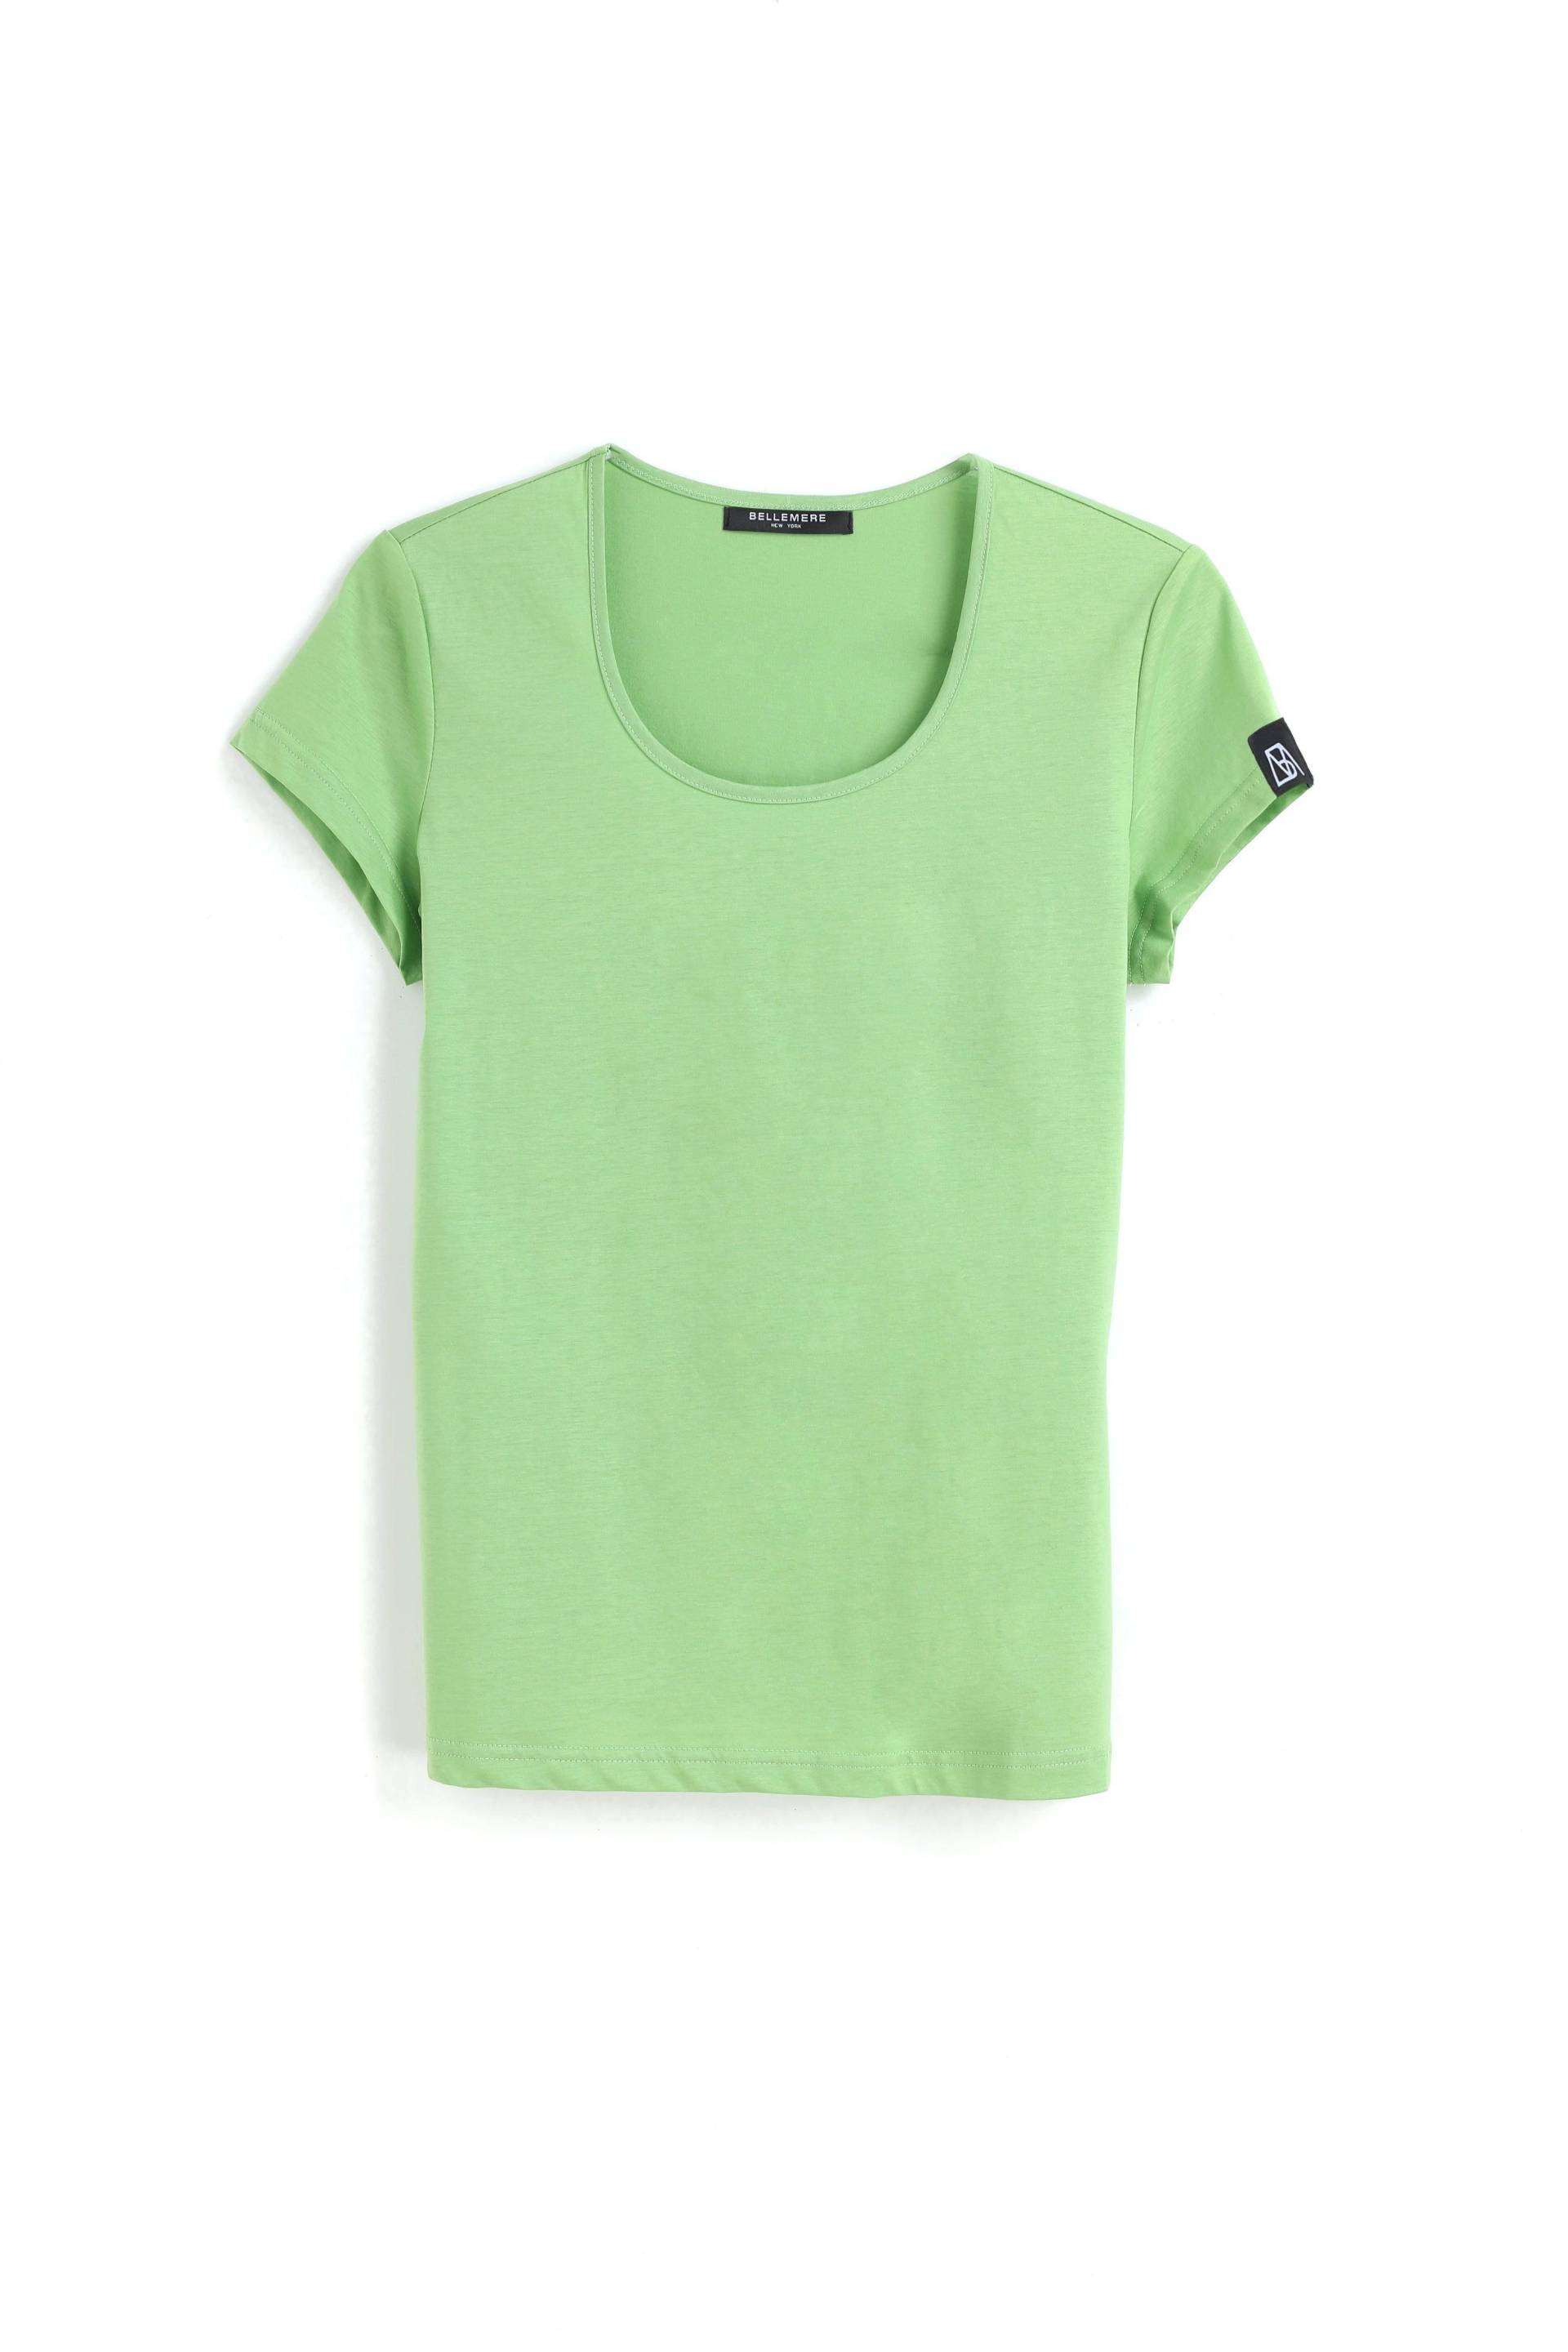 Posh Damen-baumwoll-top - 135g Damen Grün M von Bellemere New York